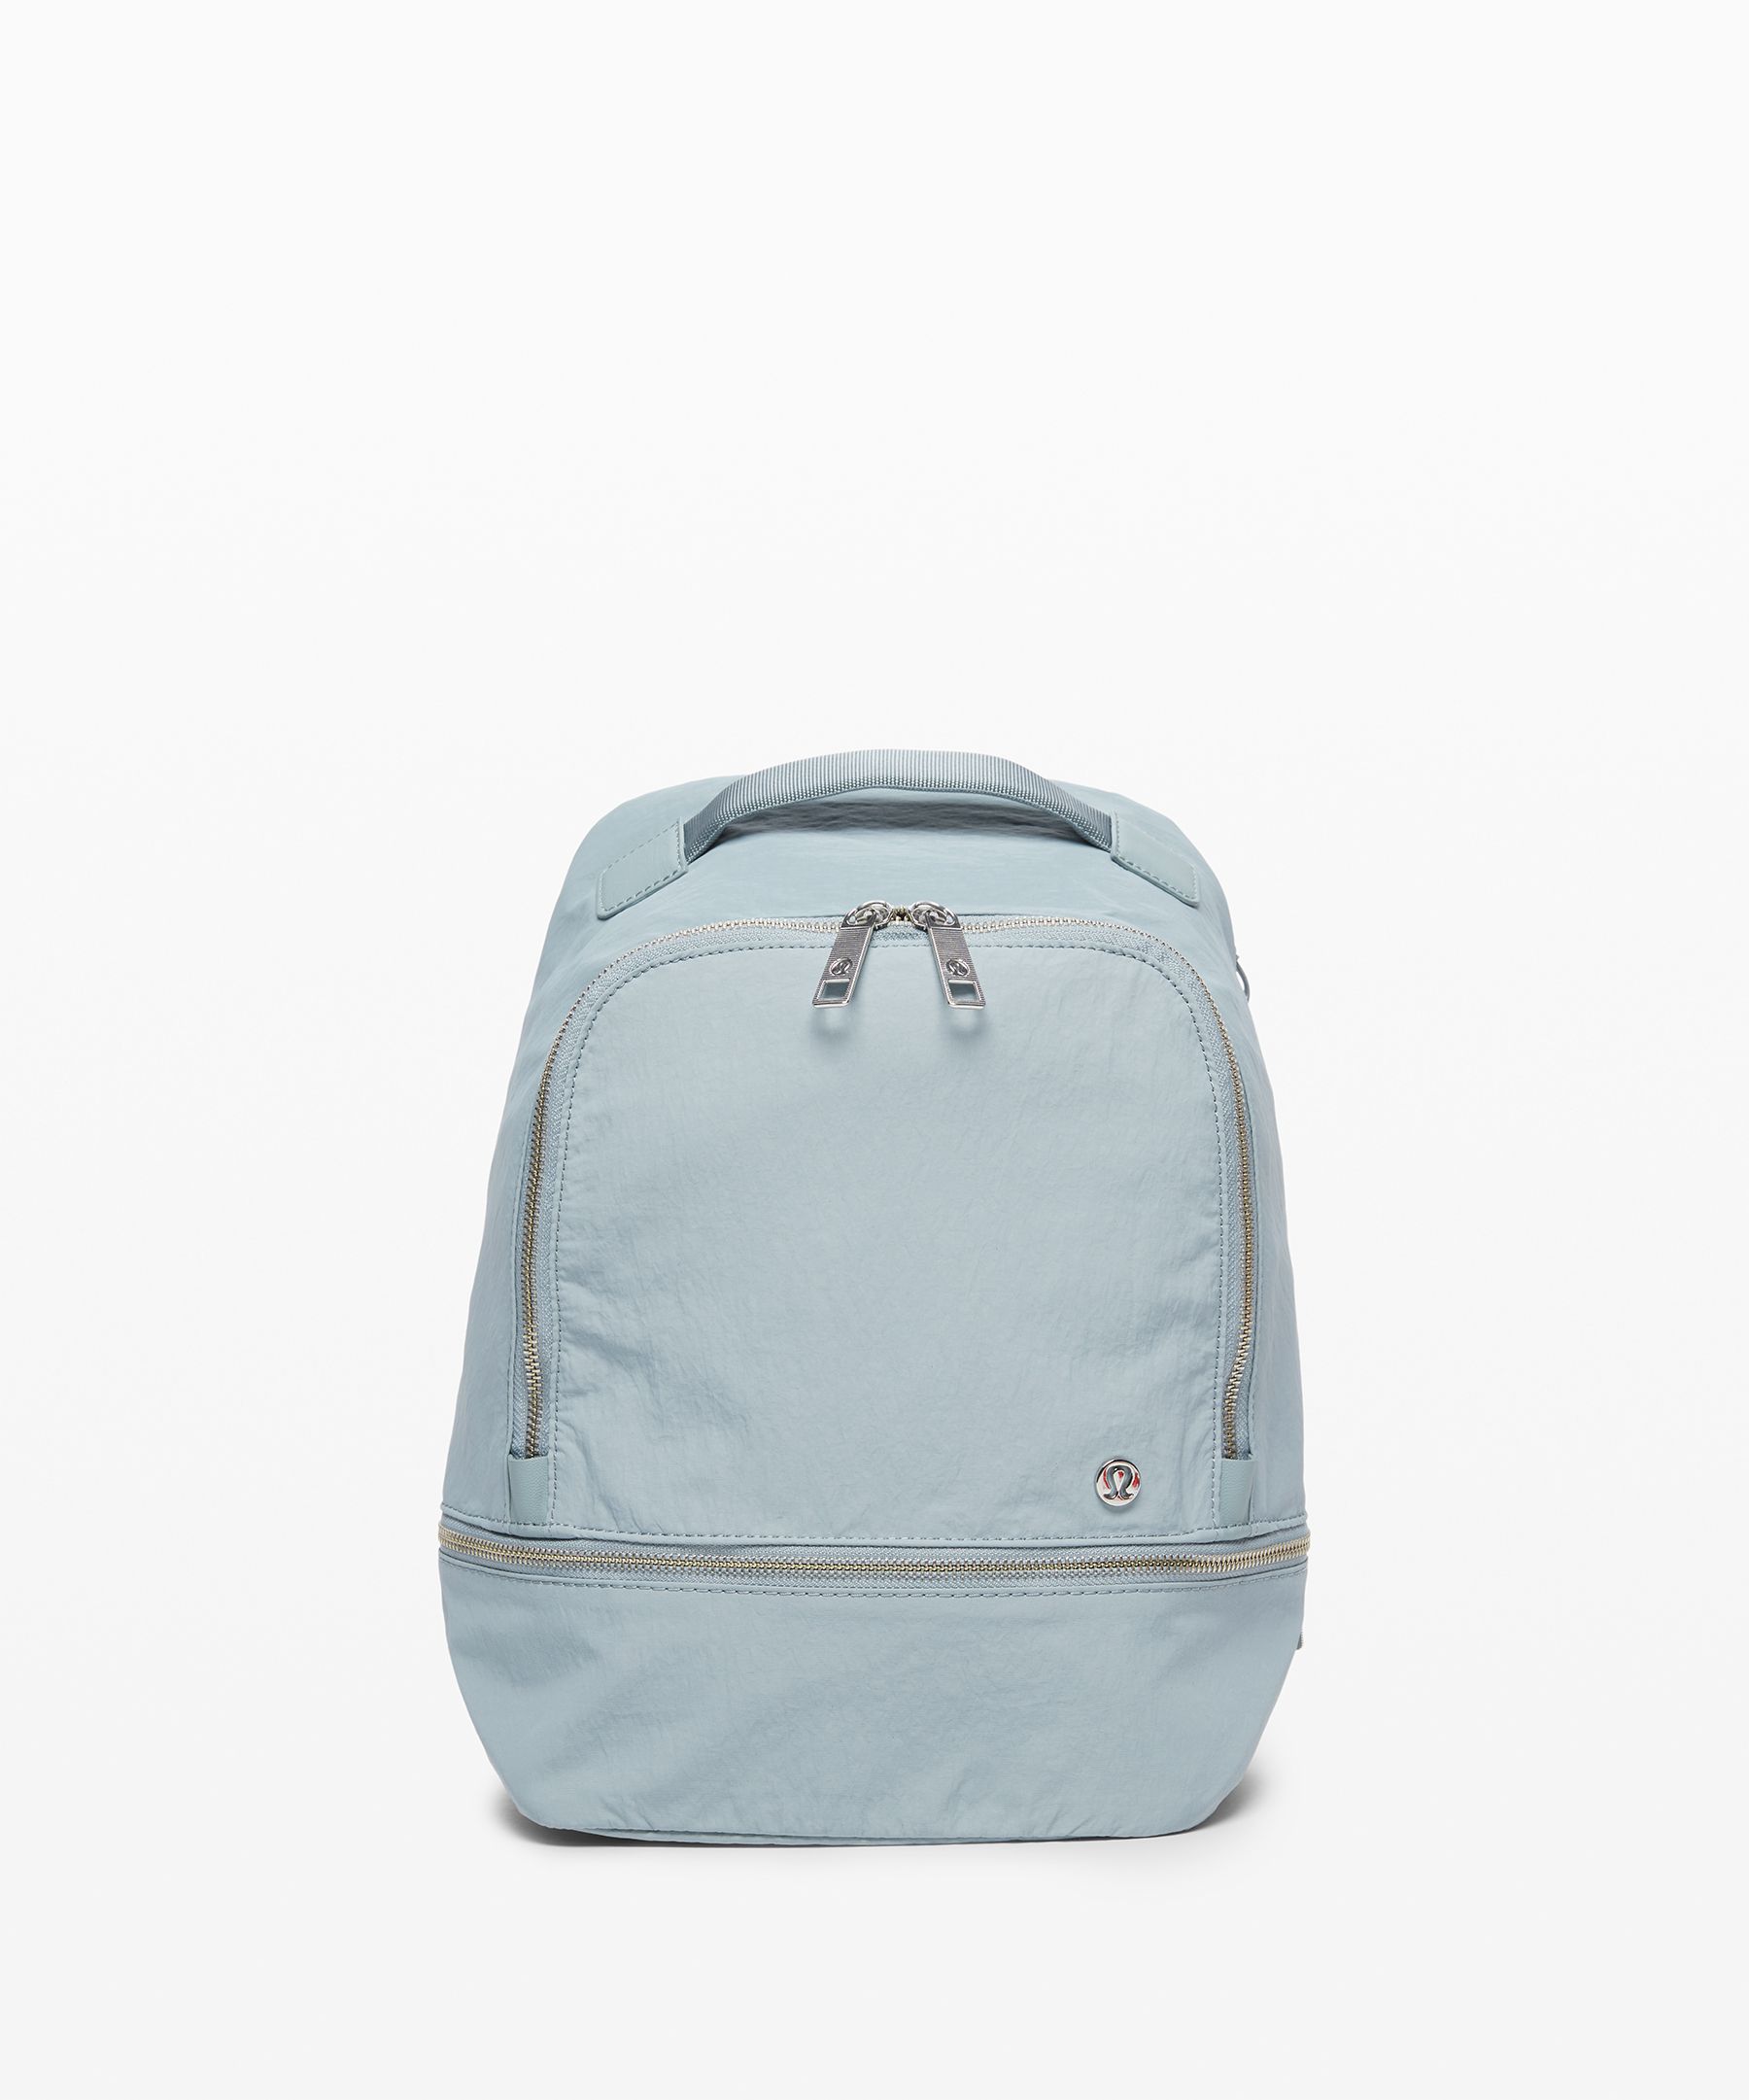 lululemon backpack mini